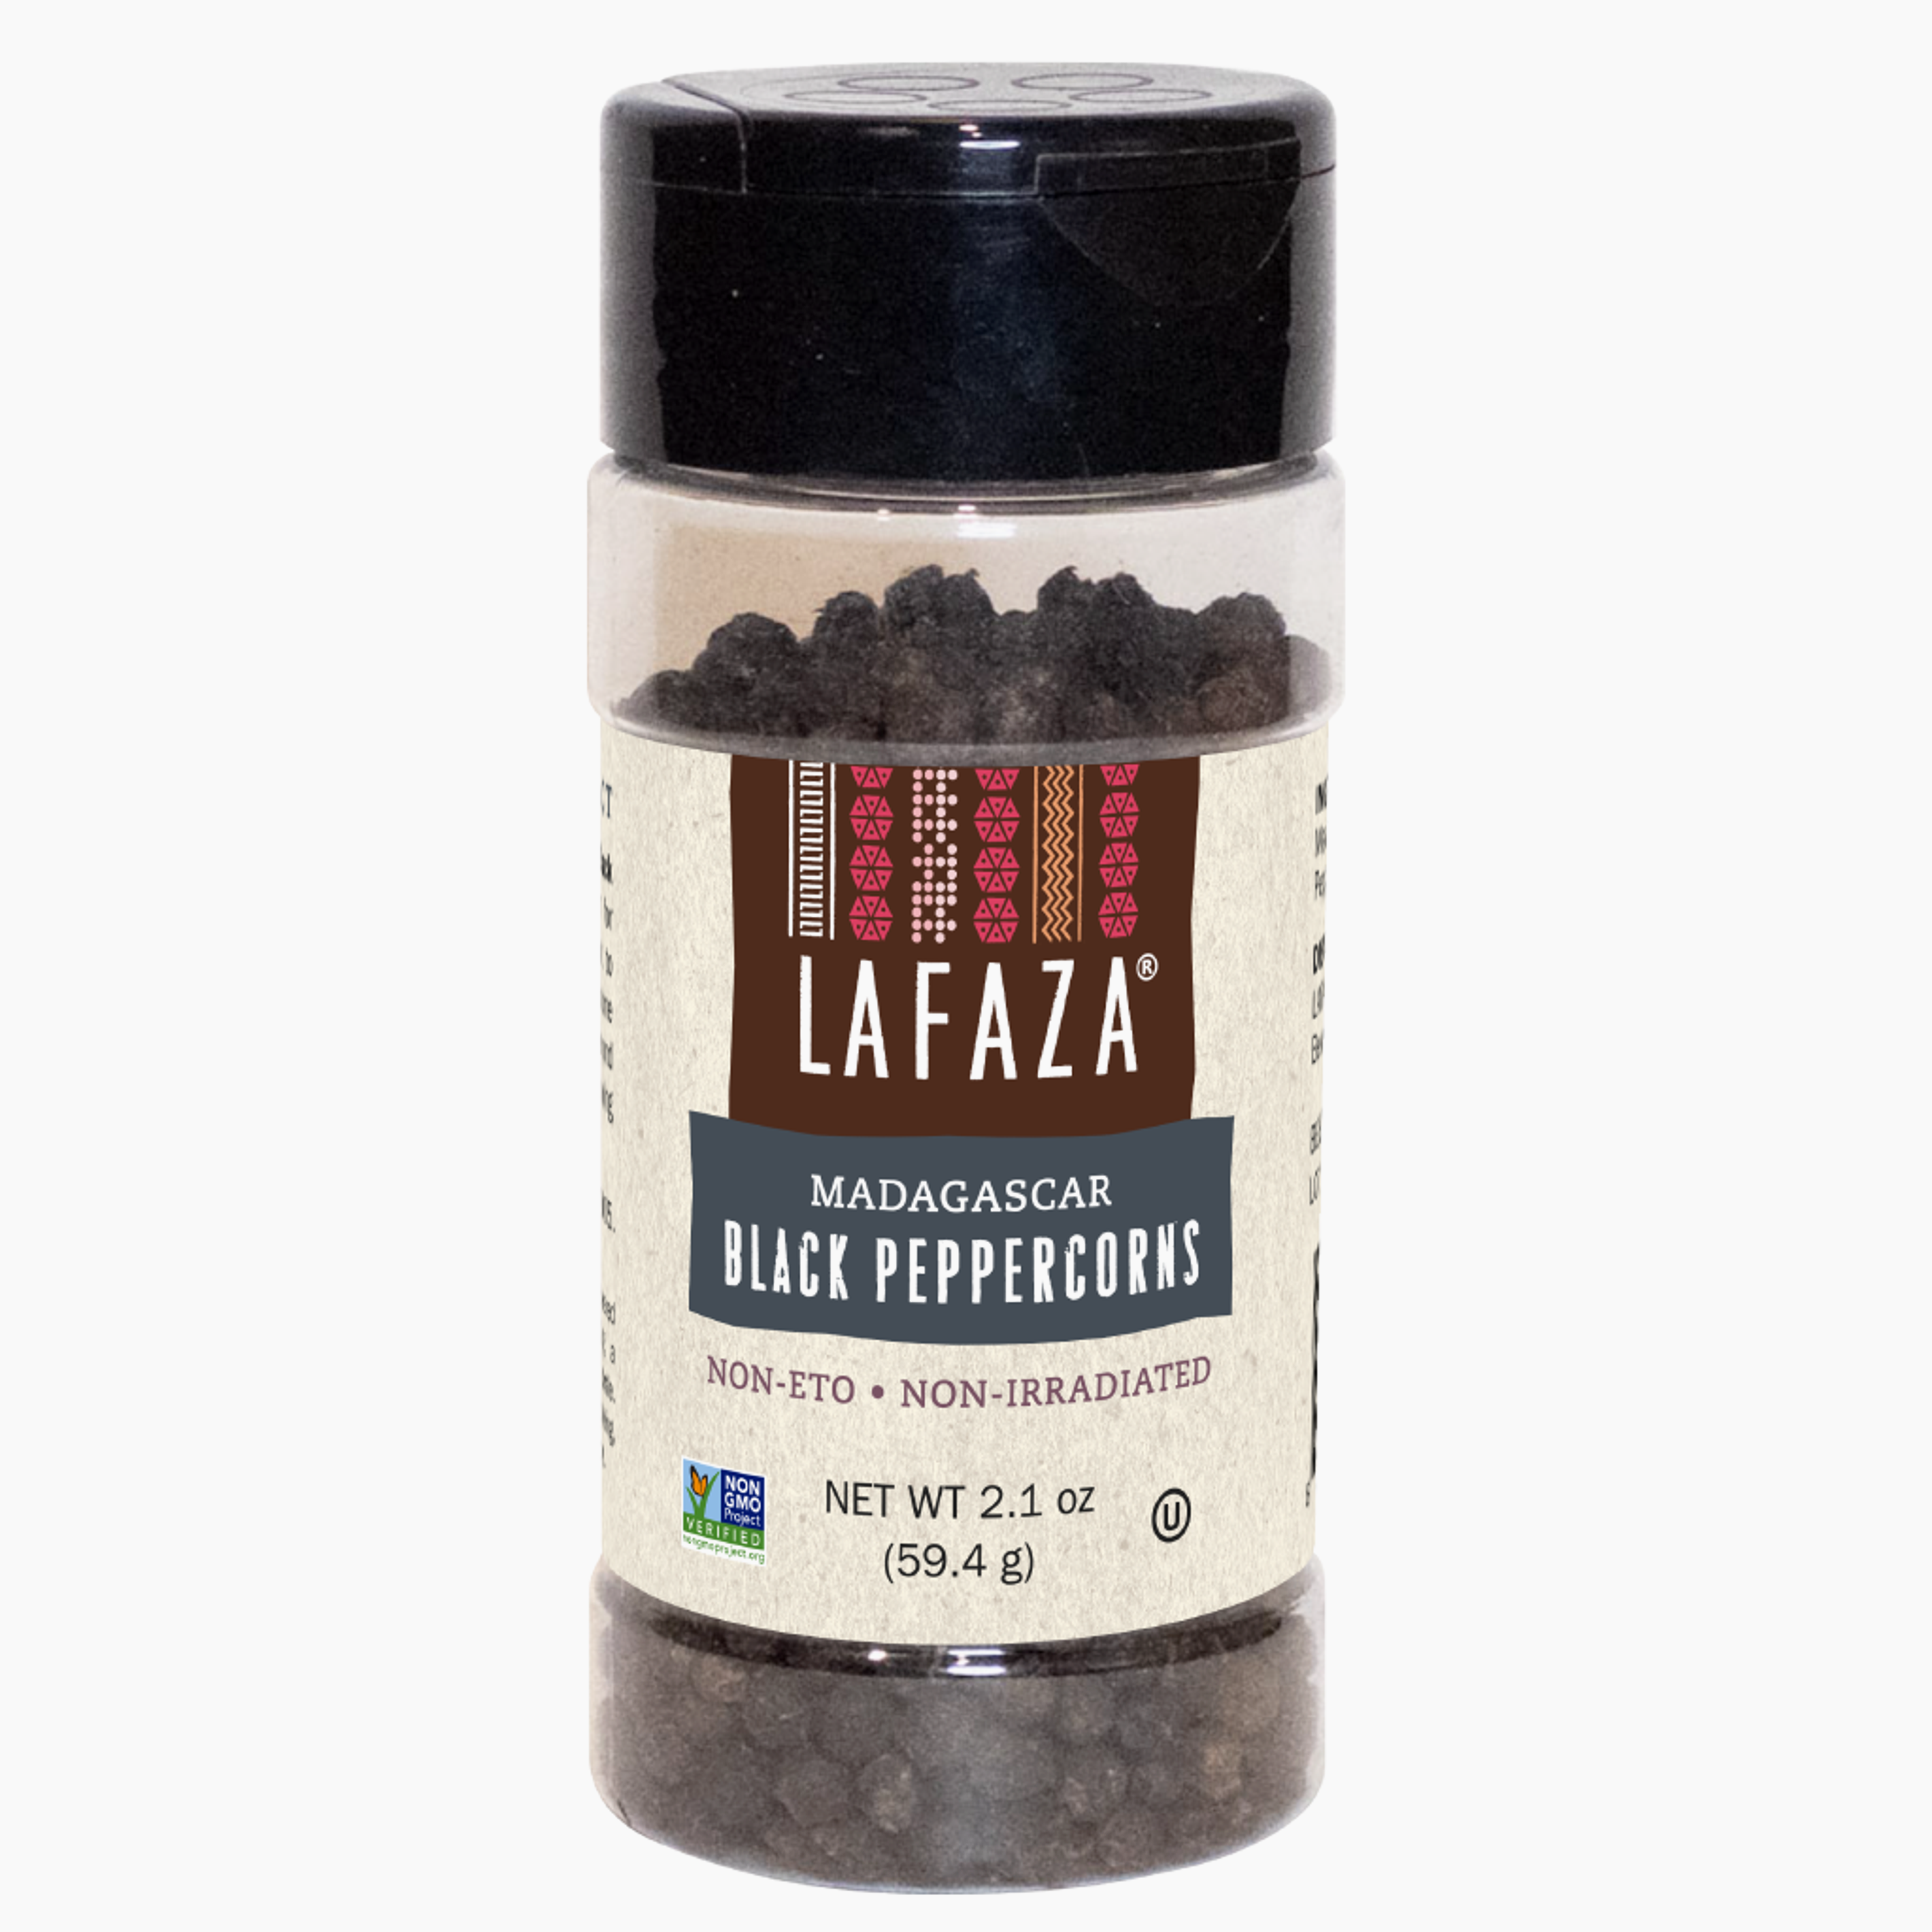 Premium Madagascar Whole Black Peppercorns